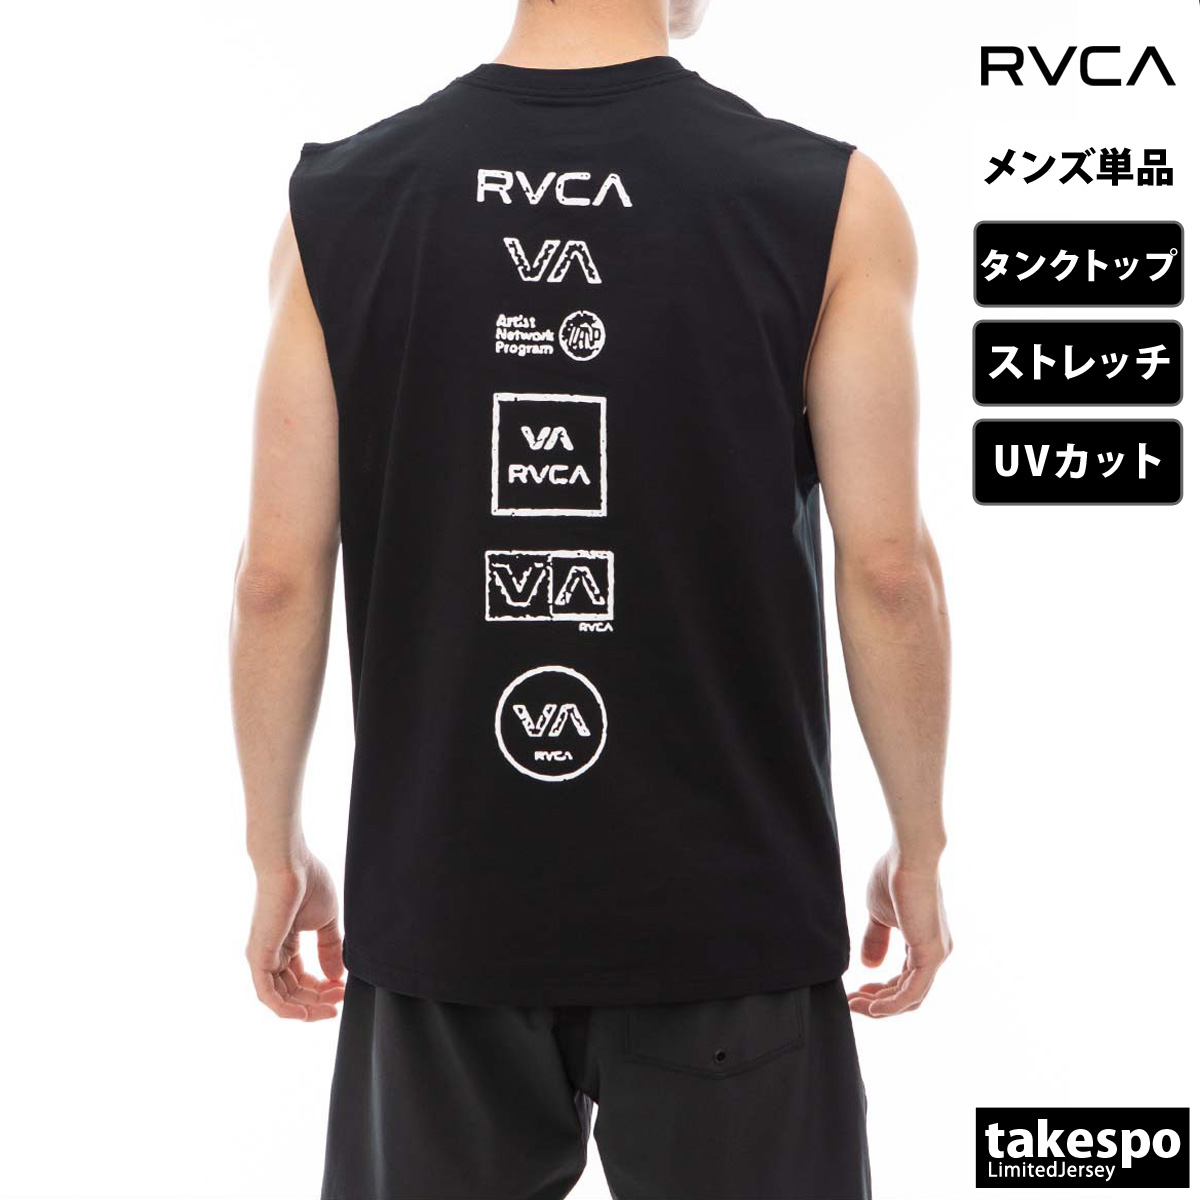 ルーカ タンクトップ メンズ 上 RVCA サーフ マリンスポーツ バックプリント付き UVカット ...